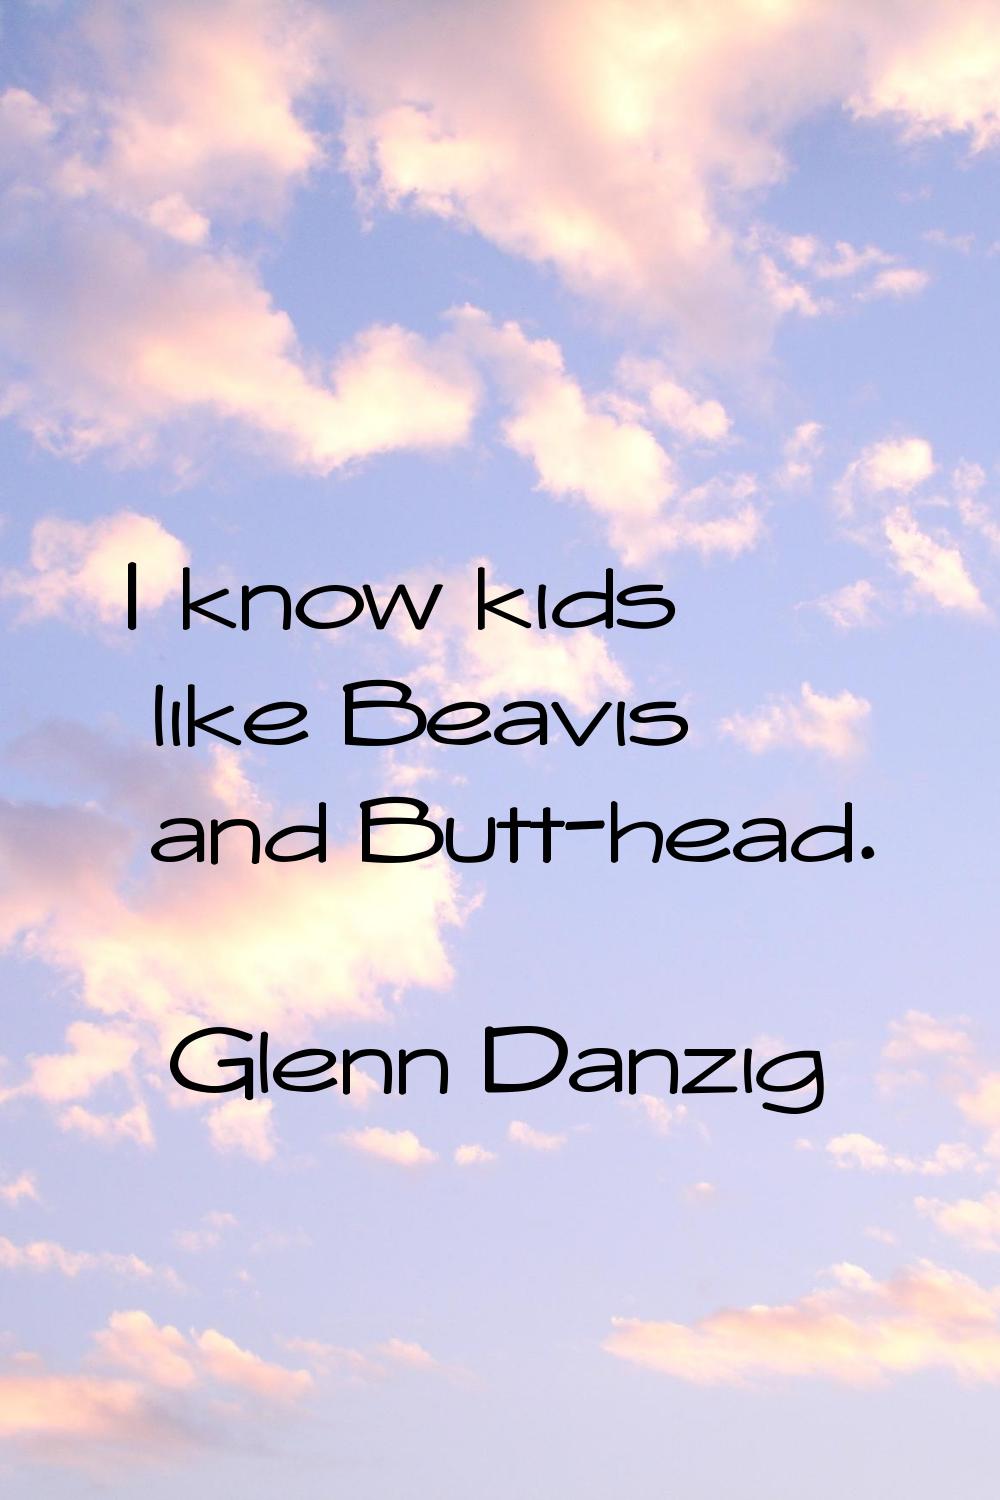 I know kids like Beavis and Butt-head.